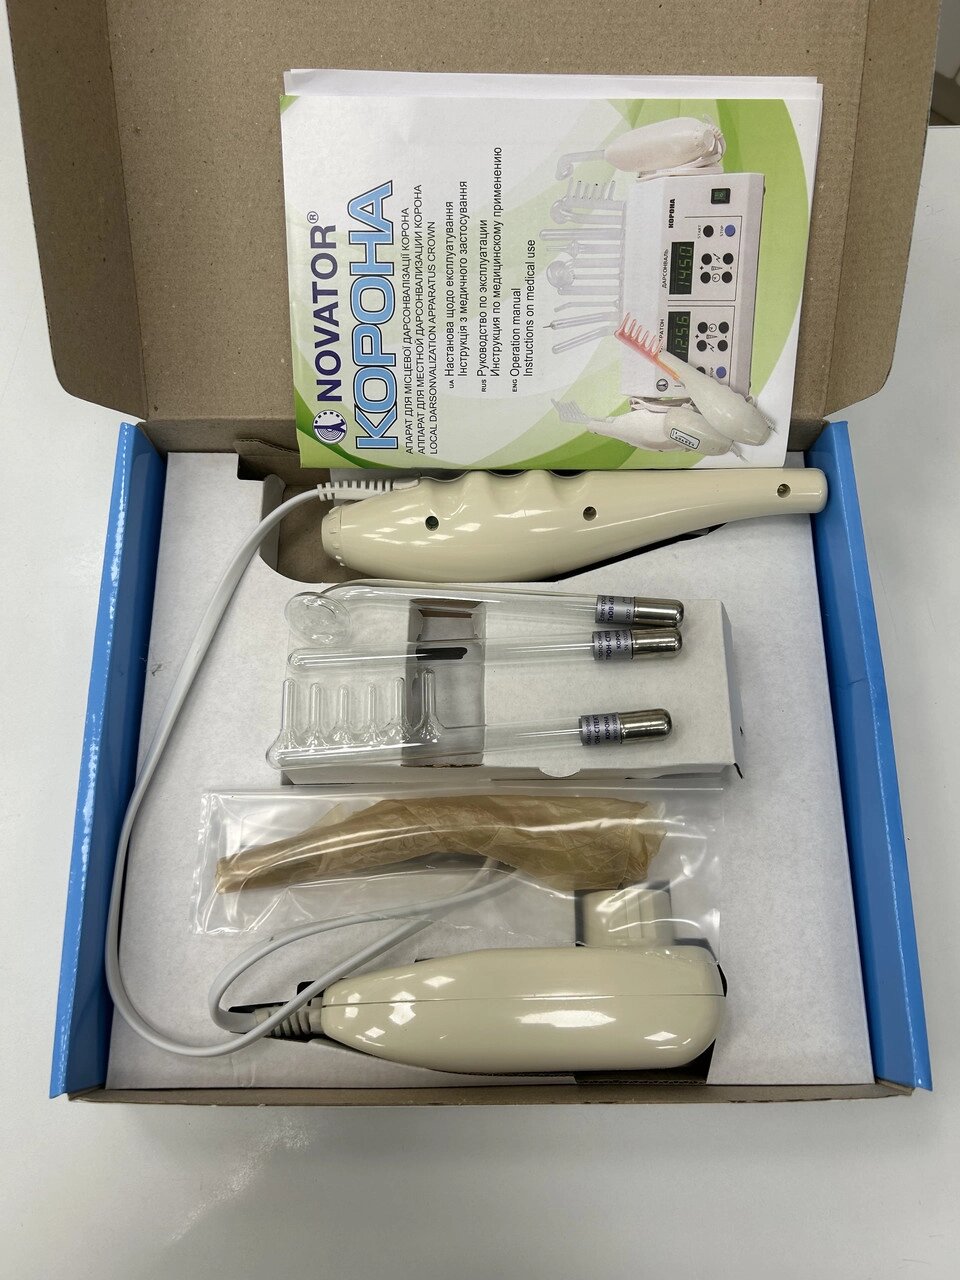 Апарат Дарсонваль преміум класу "Корона-05" в коробці (4 електрода) від компанії Медтехніка ZENET - Товари для здоров'я, затишку та комфорта - фото 1